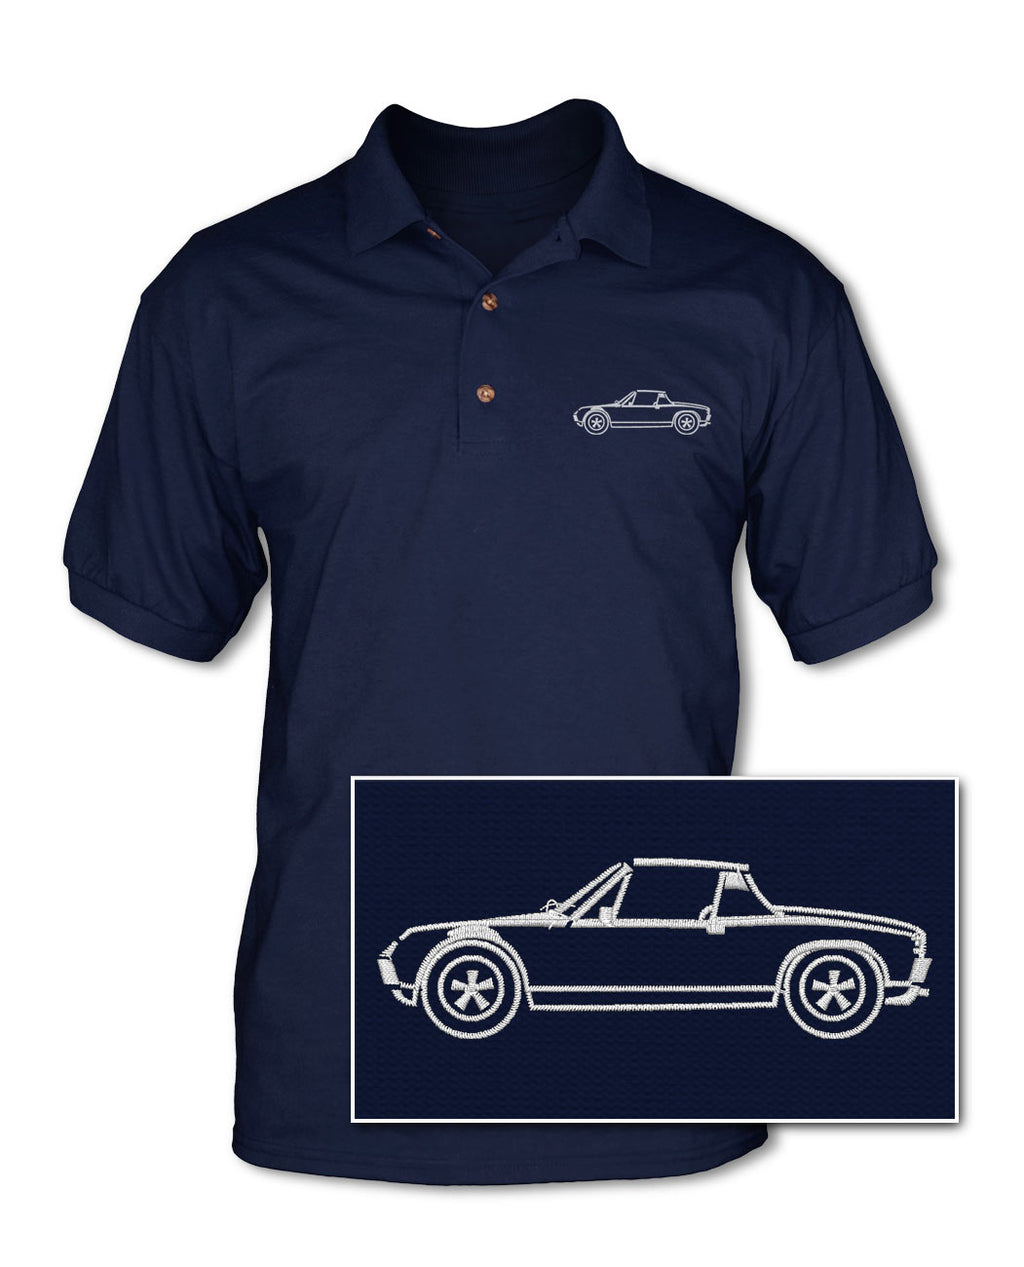 Porsche 914 Targa - Adult Pique Polo Shirt - Side View